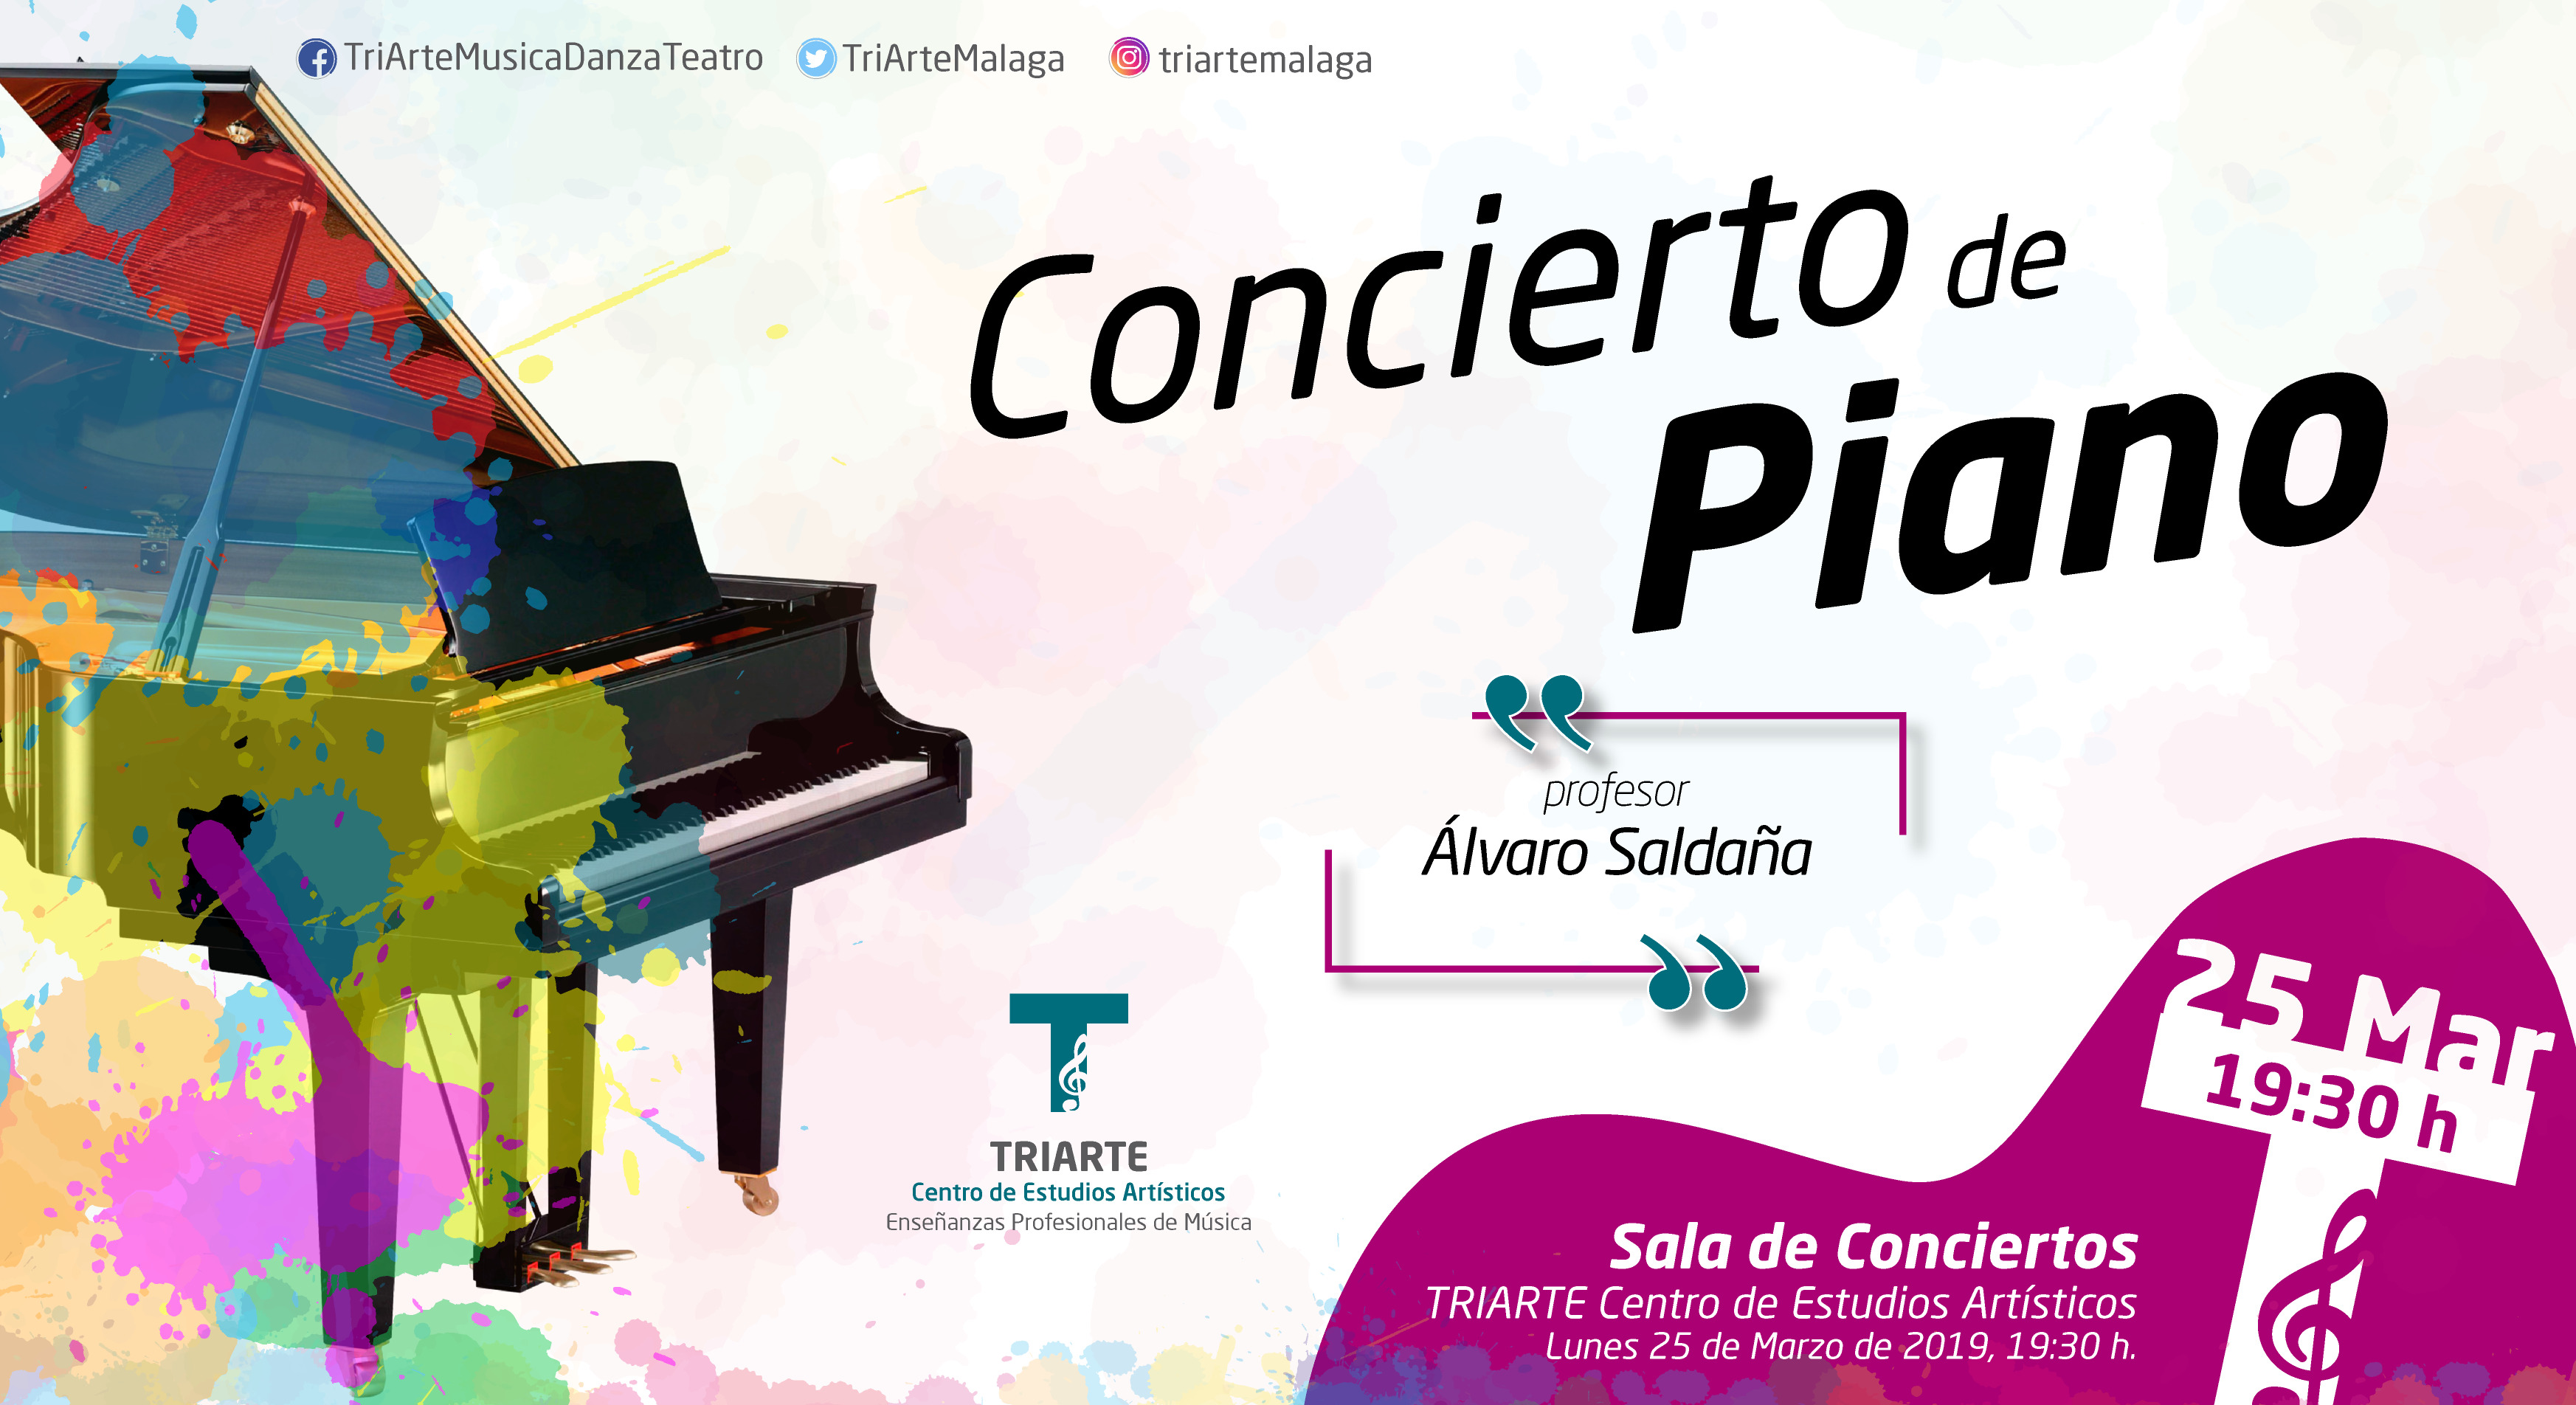 Concierto de Piano. TRIARTE - Centro de Estudios Artísticos. Profesor Álvaro Saldaña. Marzo 2019.